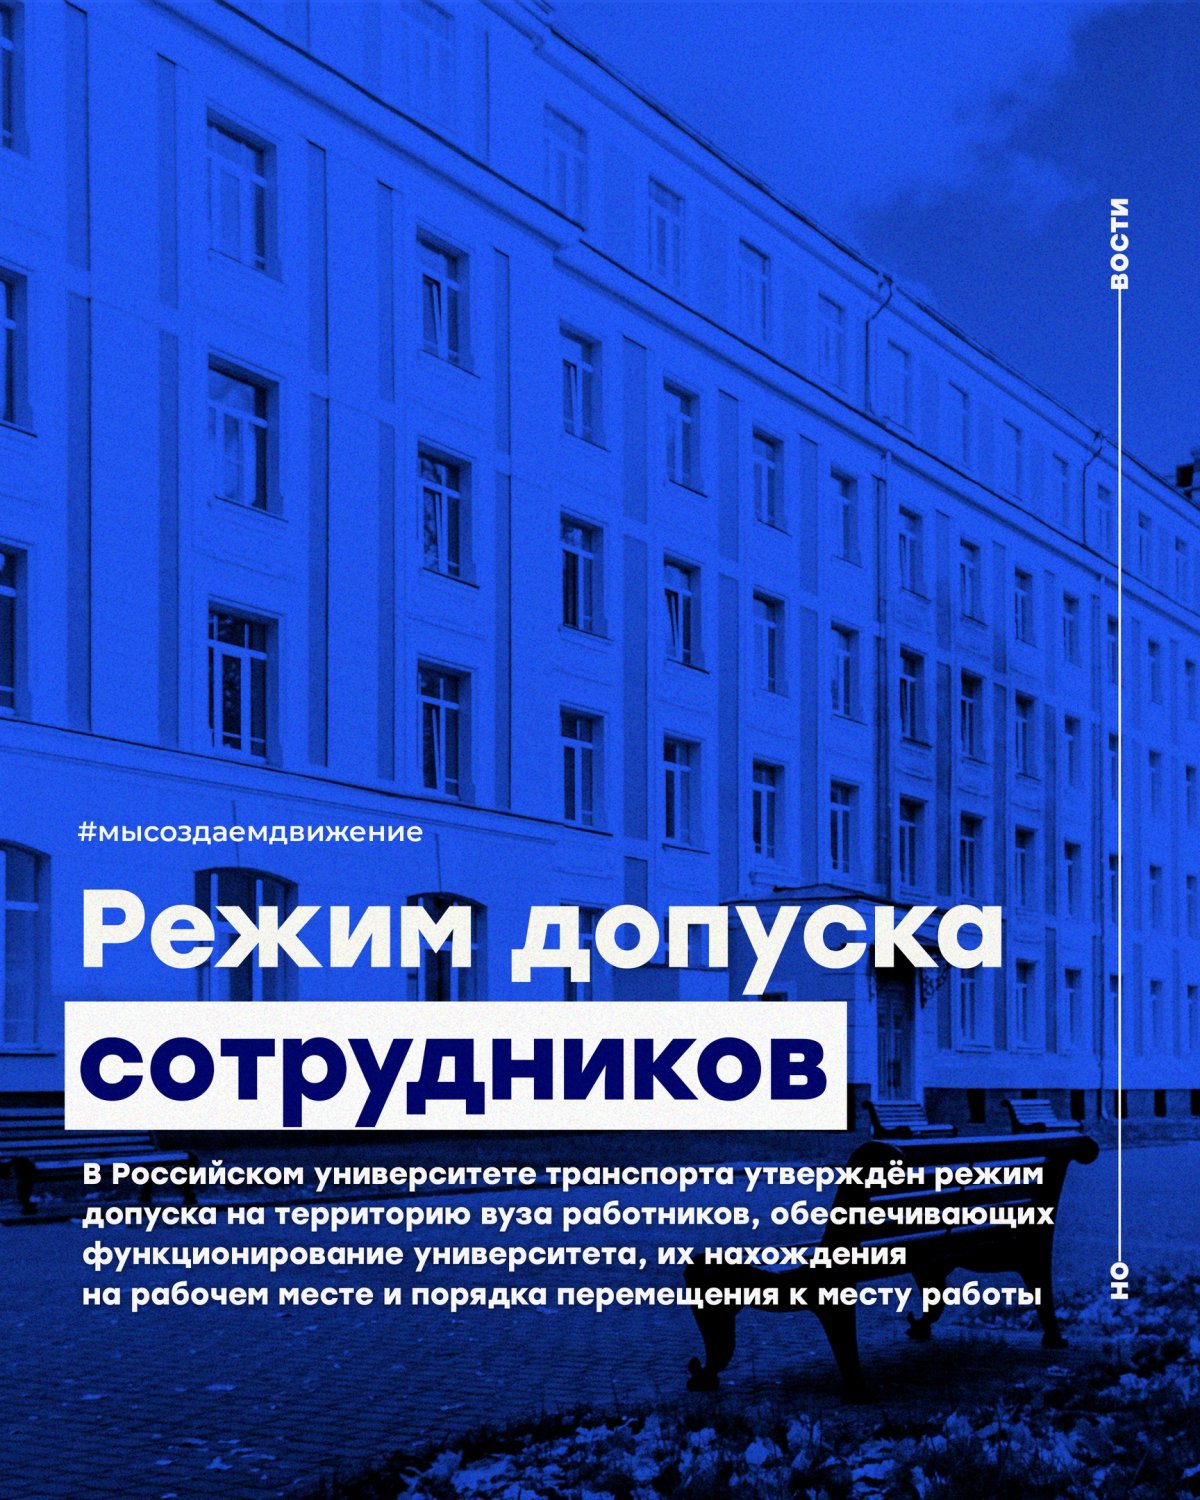 В Российском университете транспорта утверждён режим допуска на территорию вуза работников, обеспечивающих функционирование университета, их нахождения на рабочем месте и порядка перемещения к месту работы